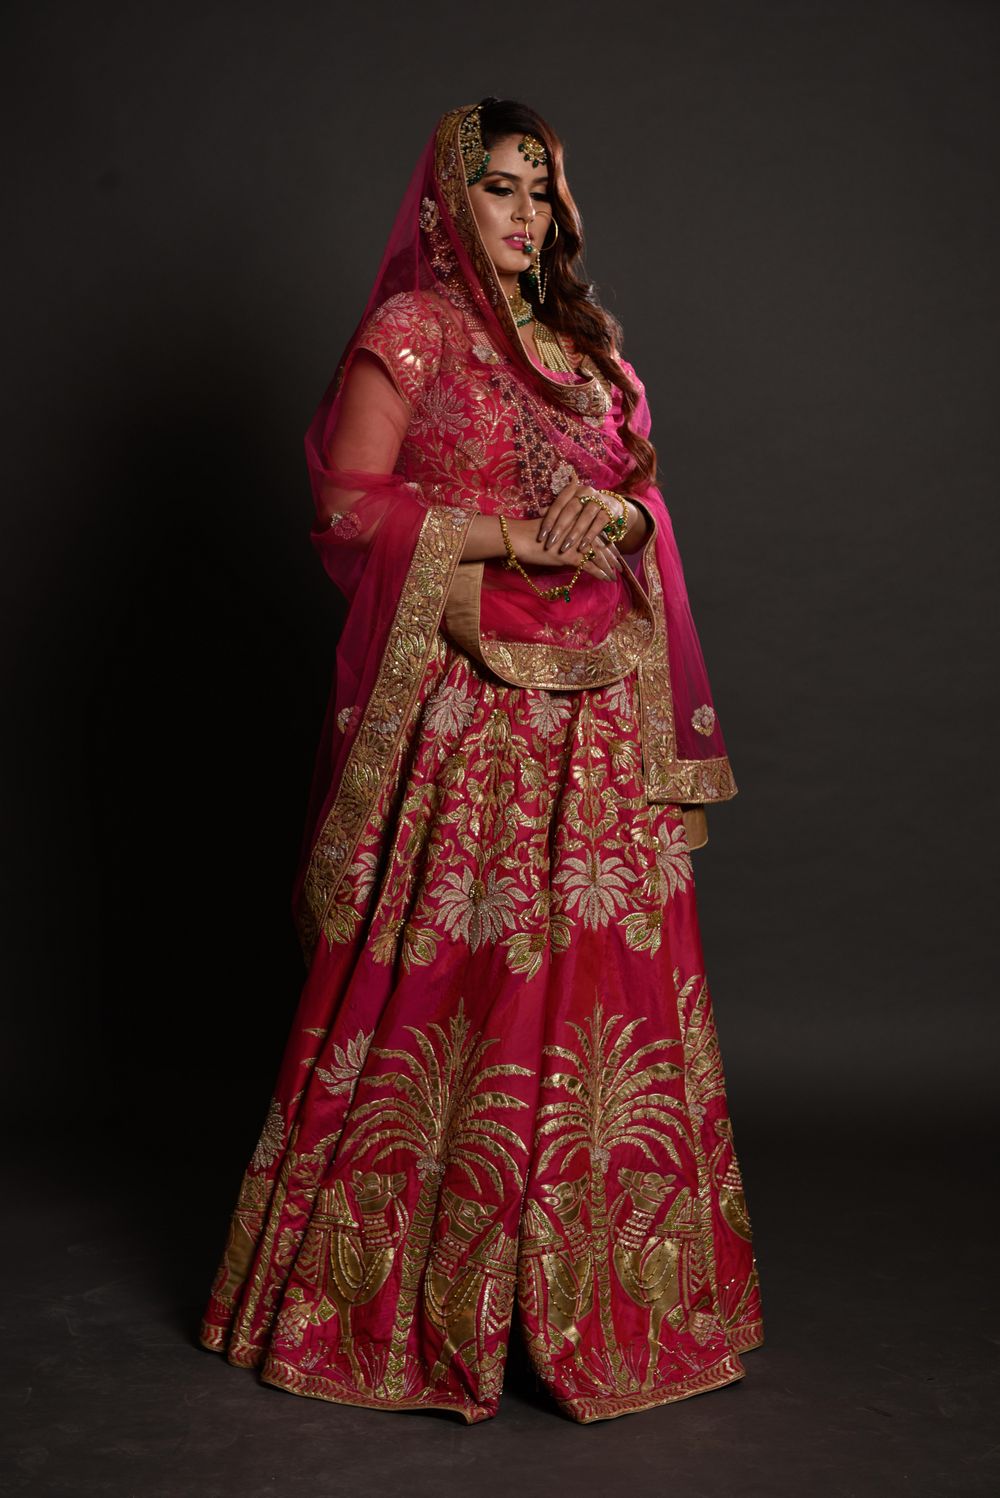 Photo From priyanka bridal look - By Makeup by Ankur Sethi